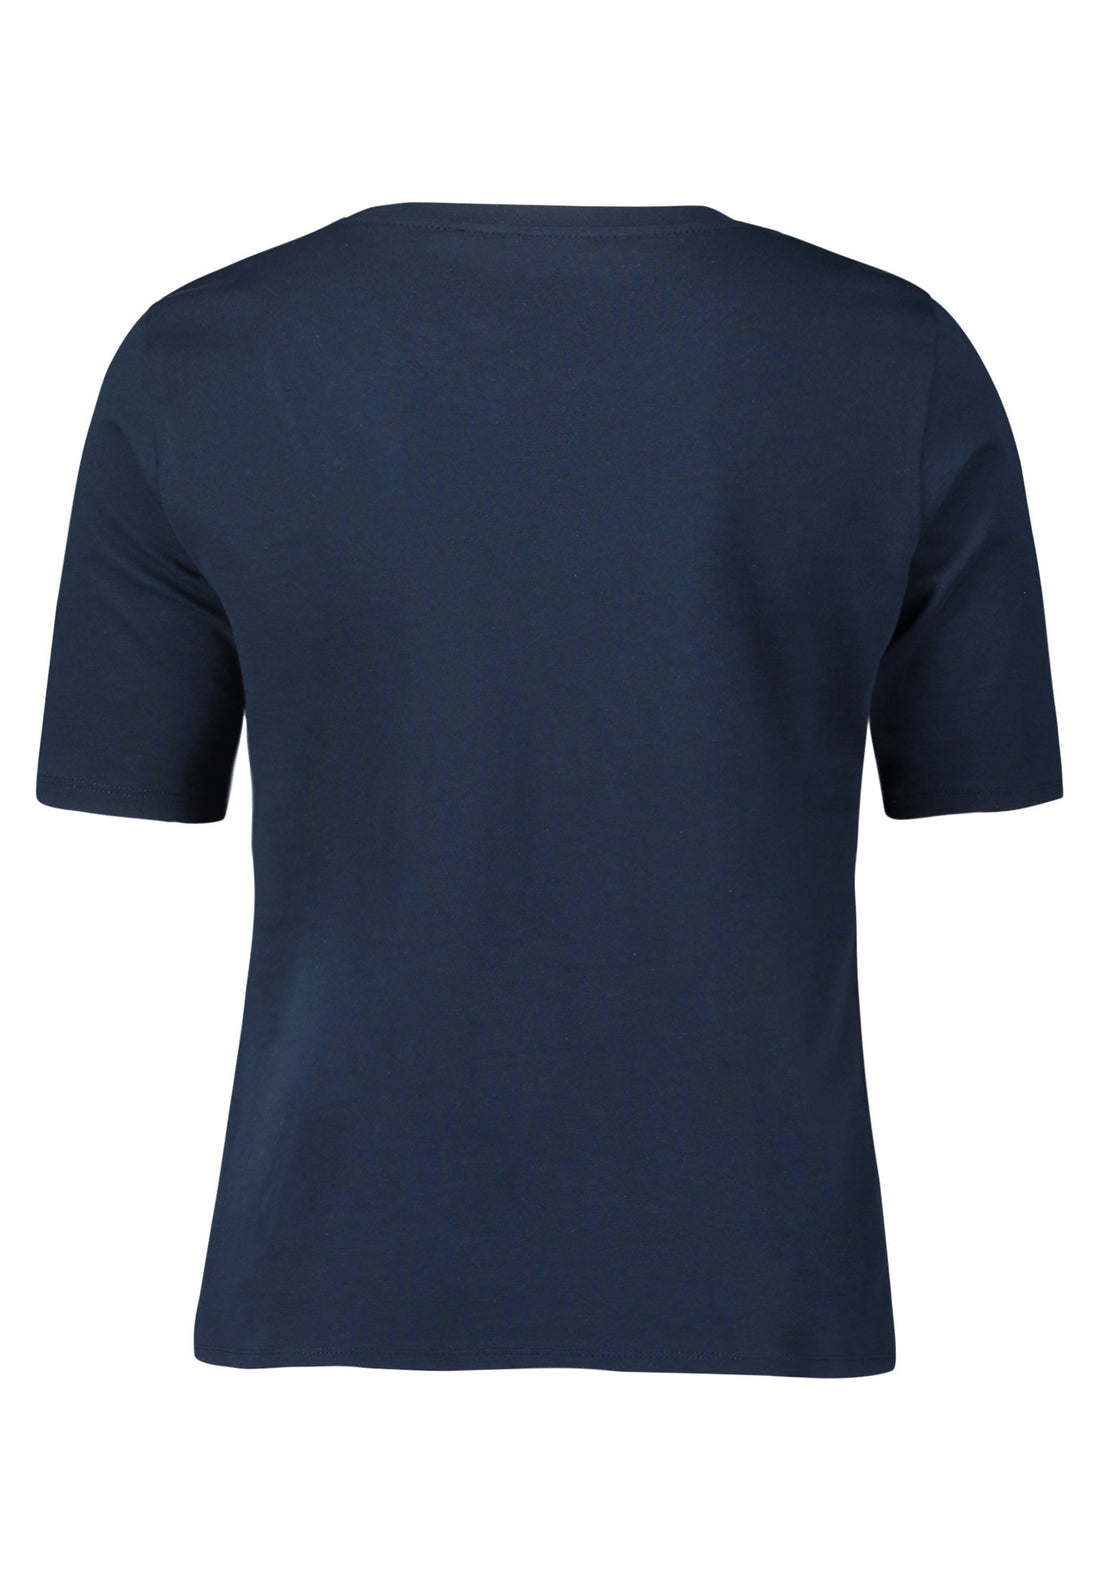 Navy Blue Round Neck T Shirt_2033 2509_8345_02